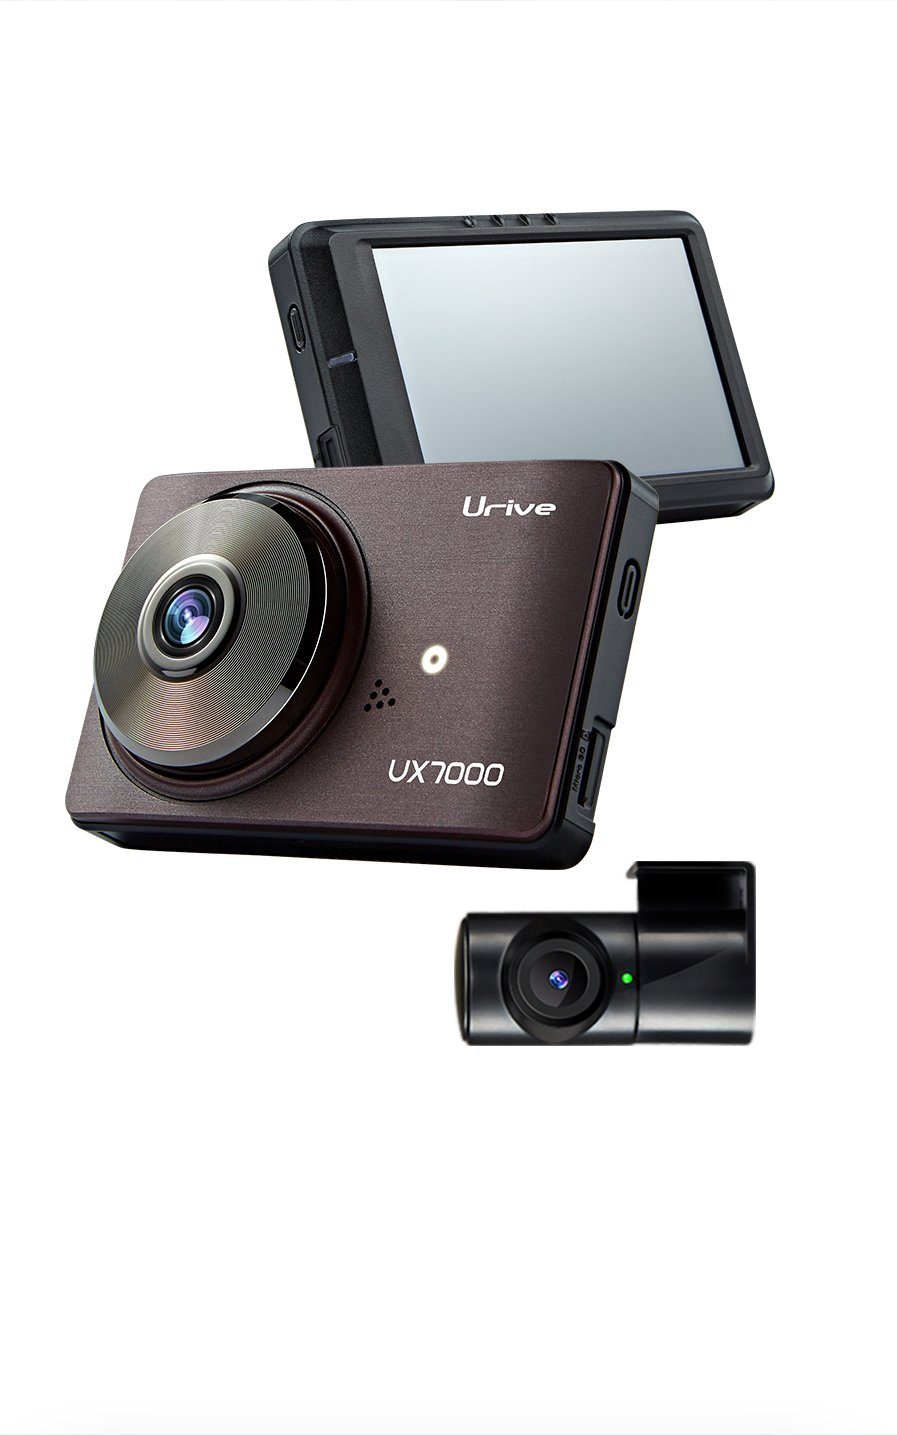 Urive »UX7000« Dashcam (Dual Dashcam 1080P Full HD Nachtsicht Vorne Hinten,  2.2 CMOS, 3.5" LCD Display, 32GB Micro-SD, WDR, Weitwinkel, Loop-Aufnahme &  G-Sensor, 24h Parküberwachung, Dual Dashcam 1080P Full HD Nachtsicht Vorne